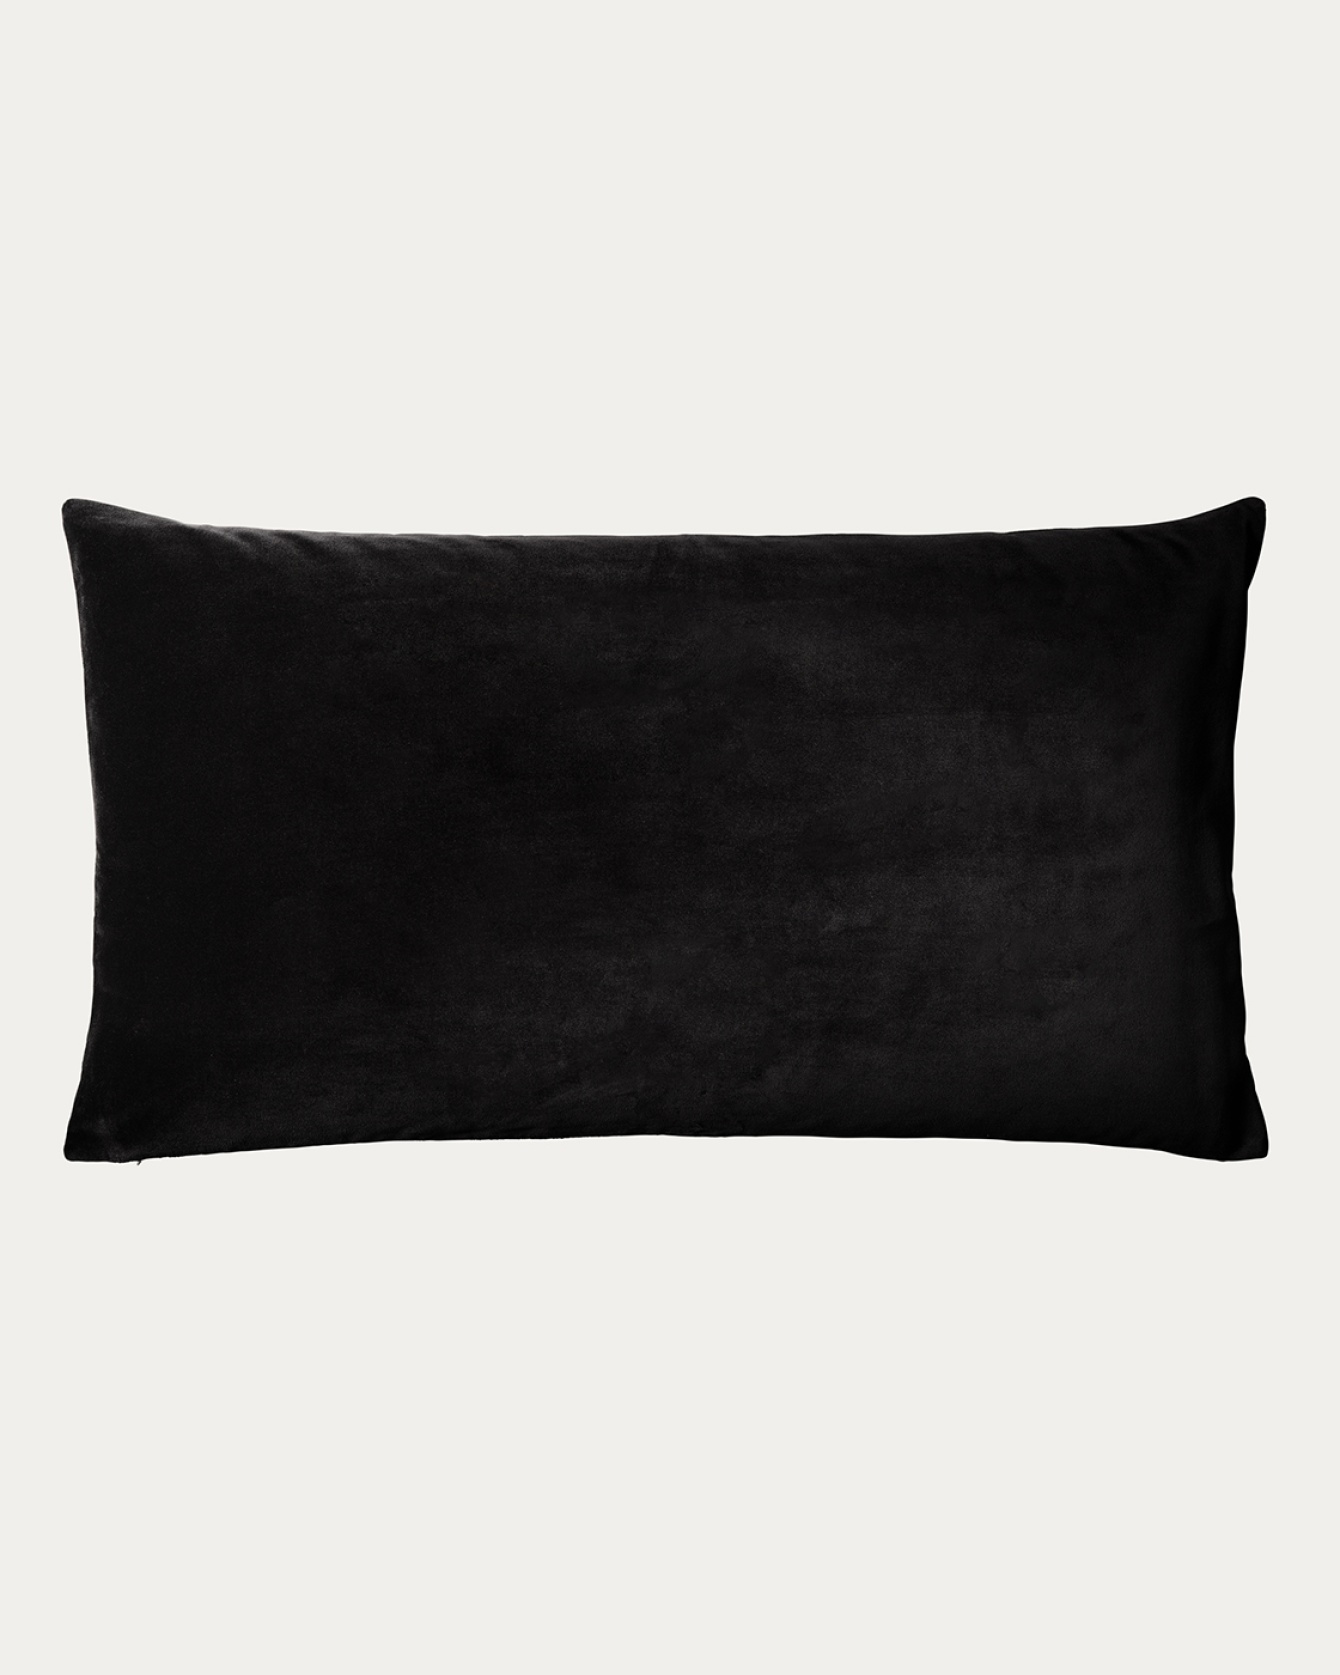 PAOLO Cushion cover 50x90 cm Black